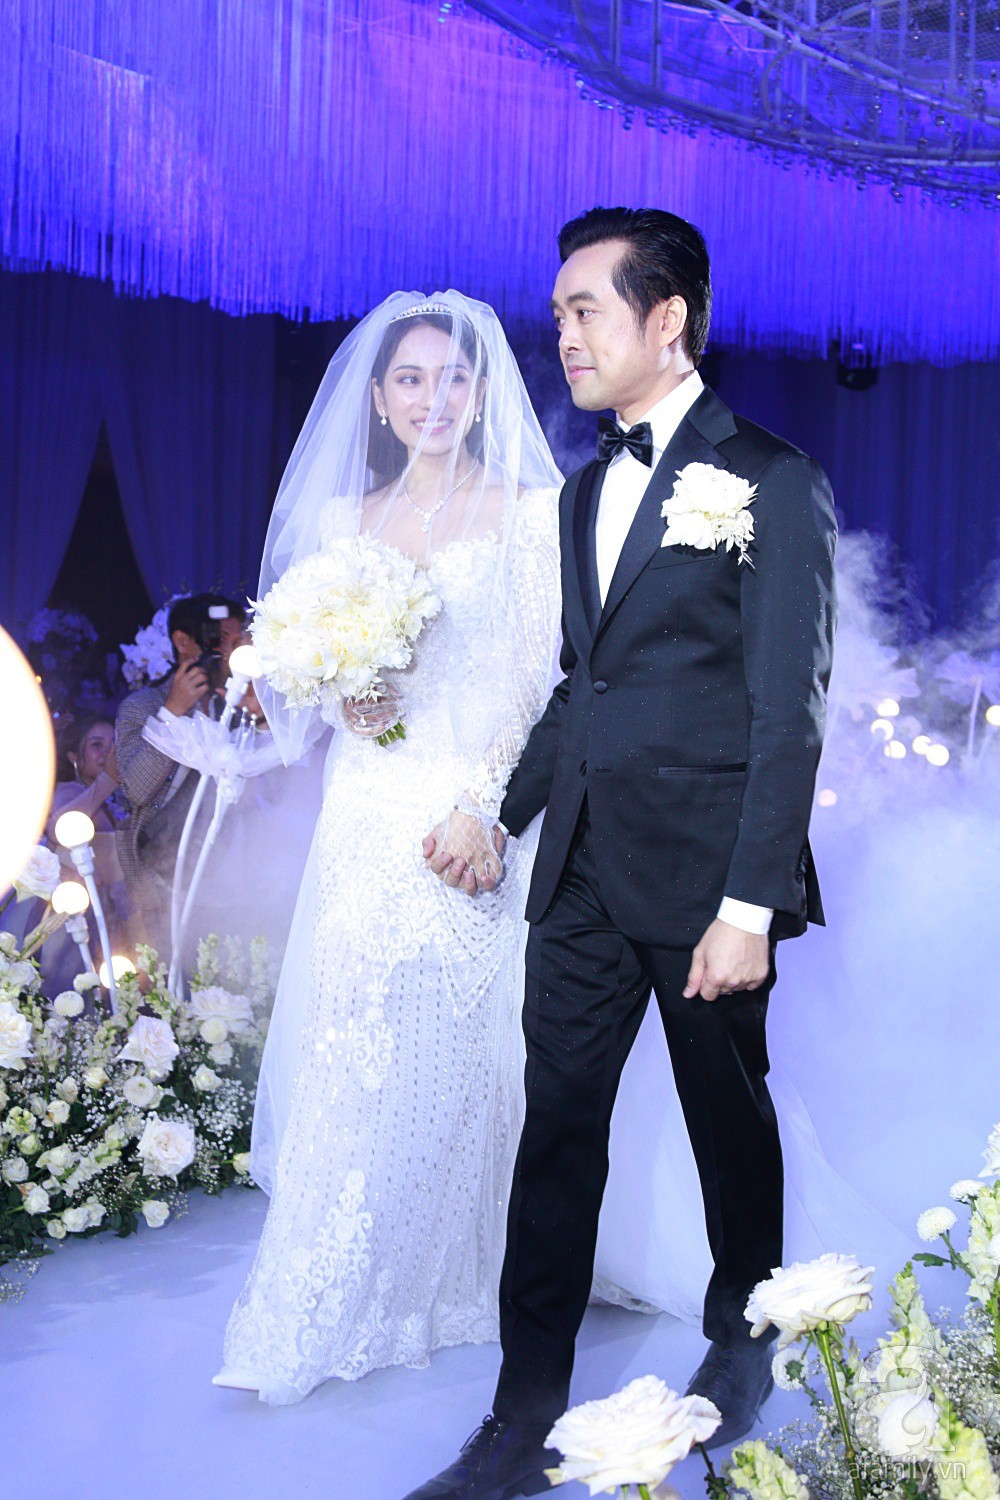 Tiệc cưới chính thức bắt đầu, cô dâu Sara Lưu âu yếm lau nhẹ vết son của mình trên môi chú rể Dương Khắc Linh-7